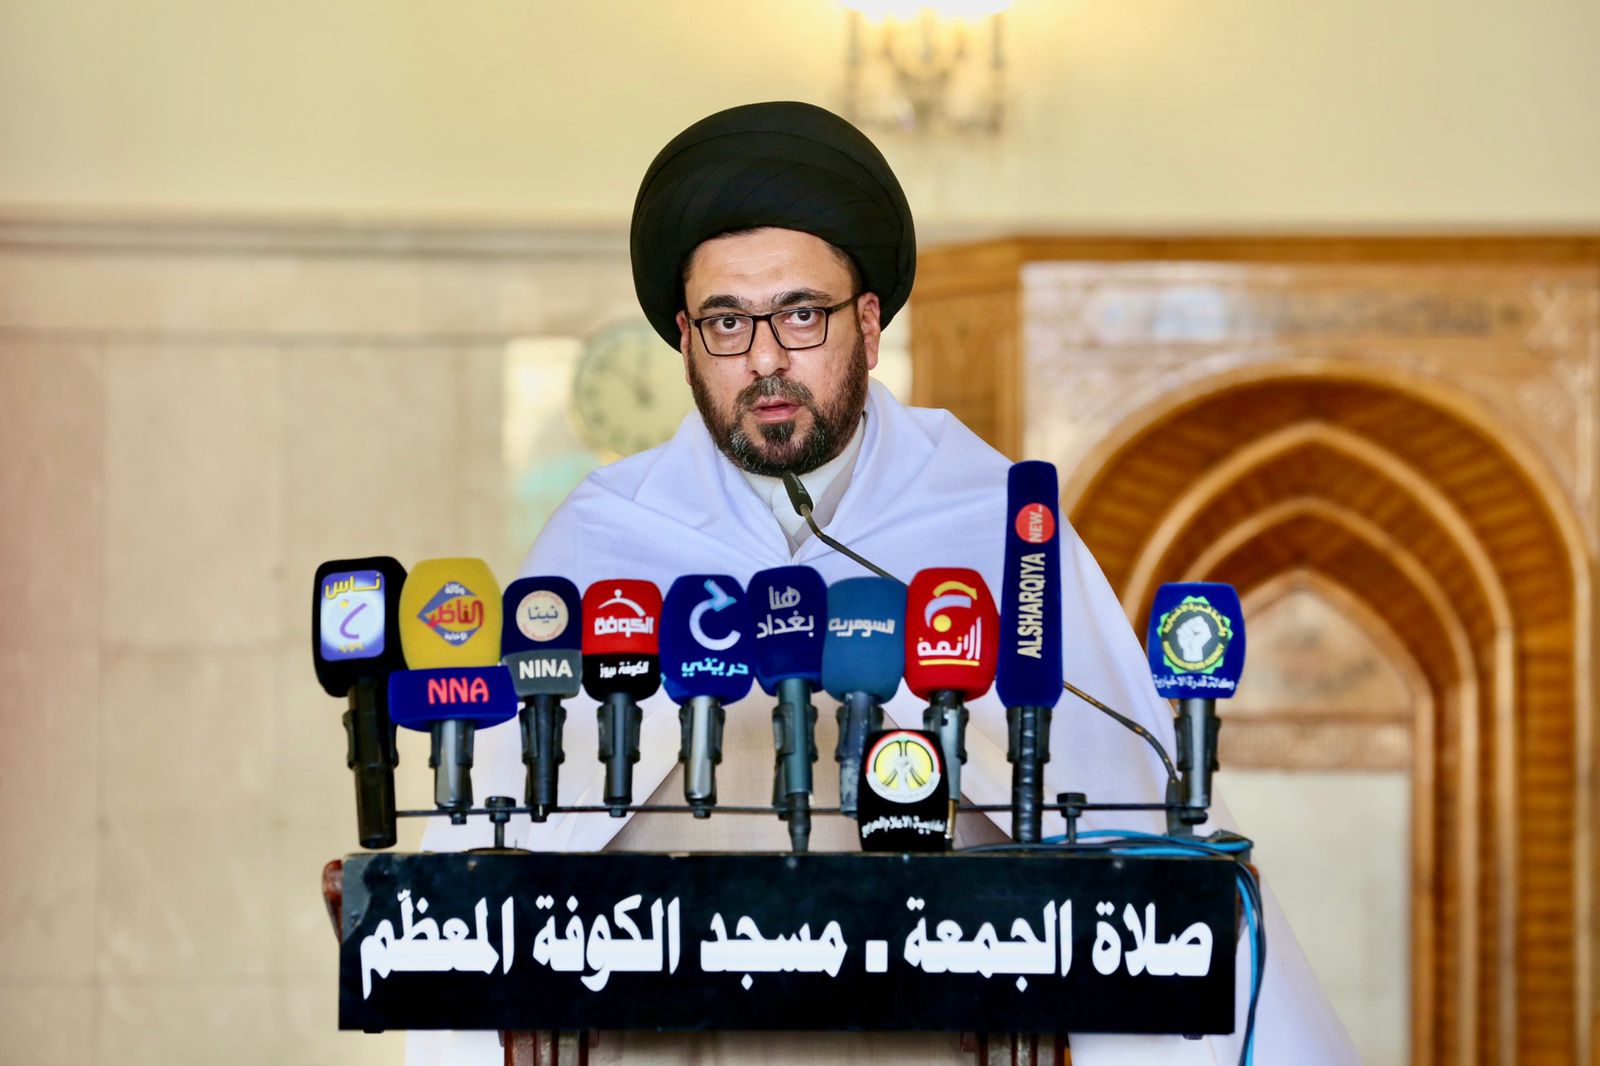 Kufa mosque preacher: Al-Sadr's government will achieve reform